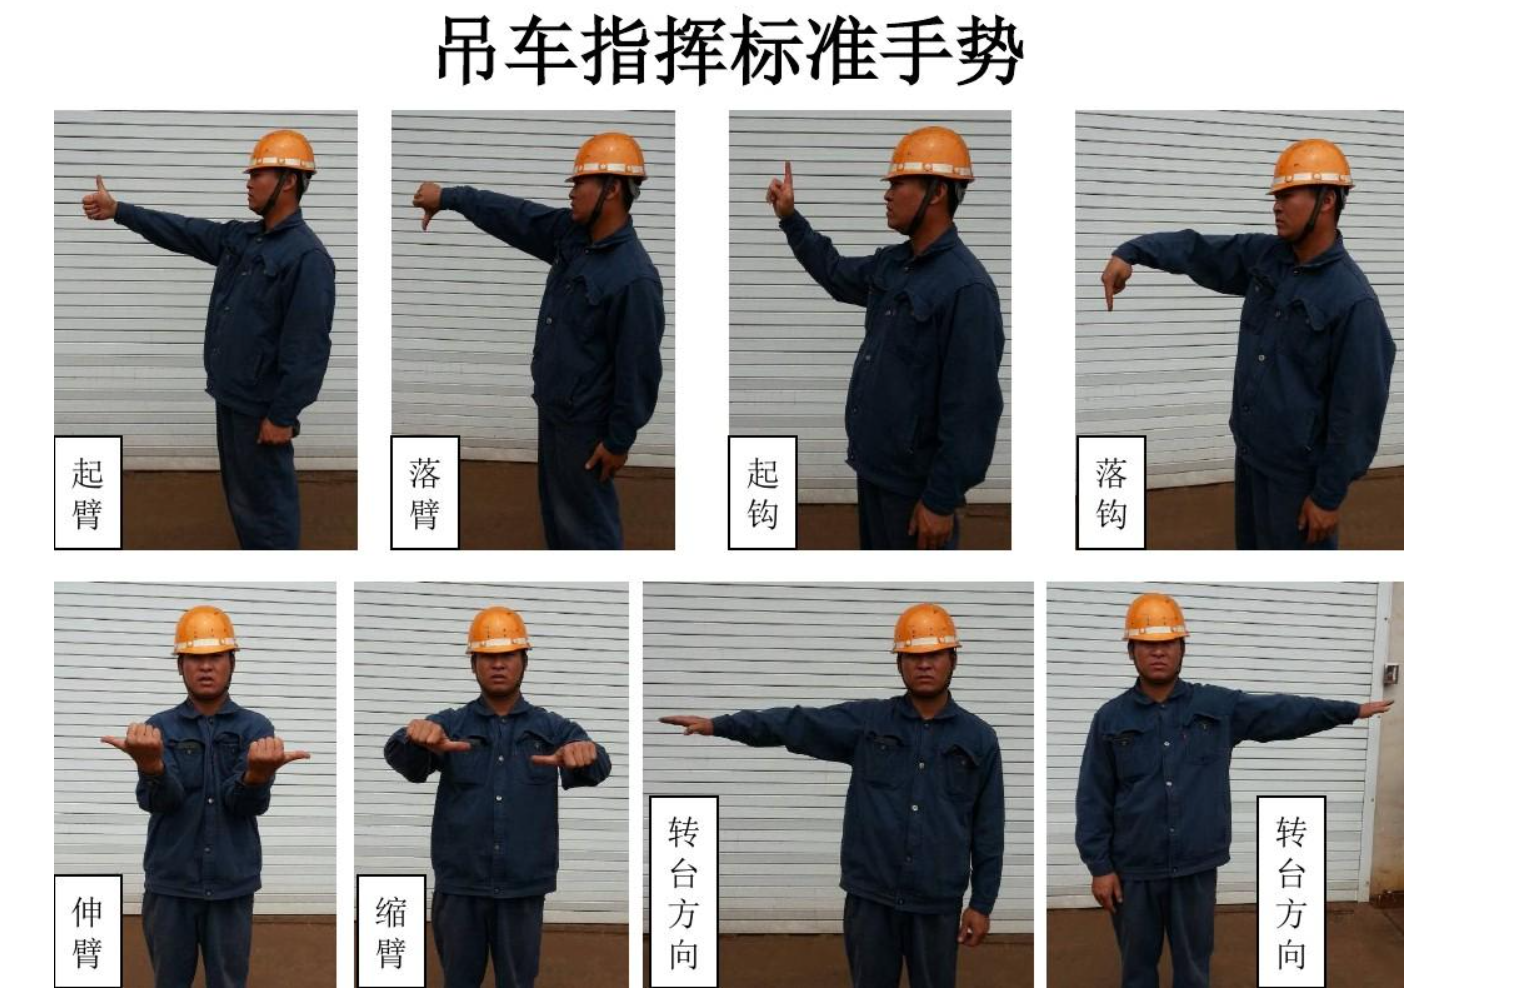 吊车施工中常用的几种手势信号介绍